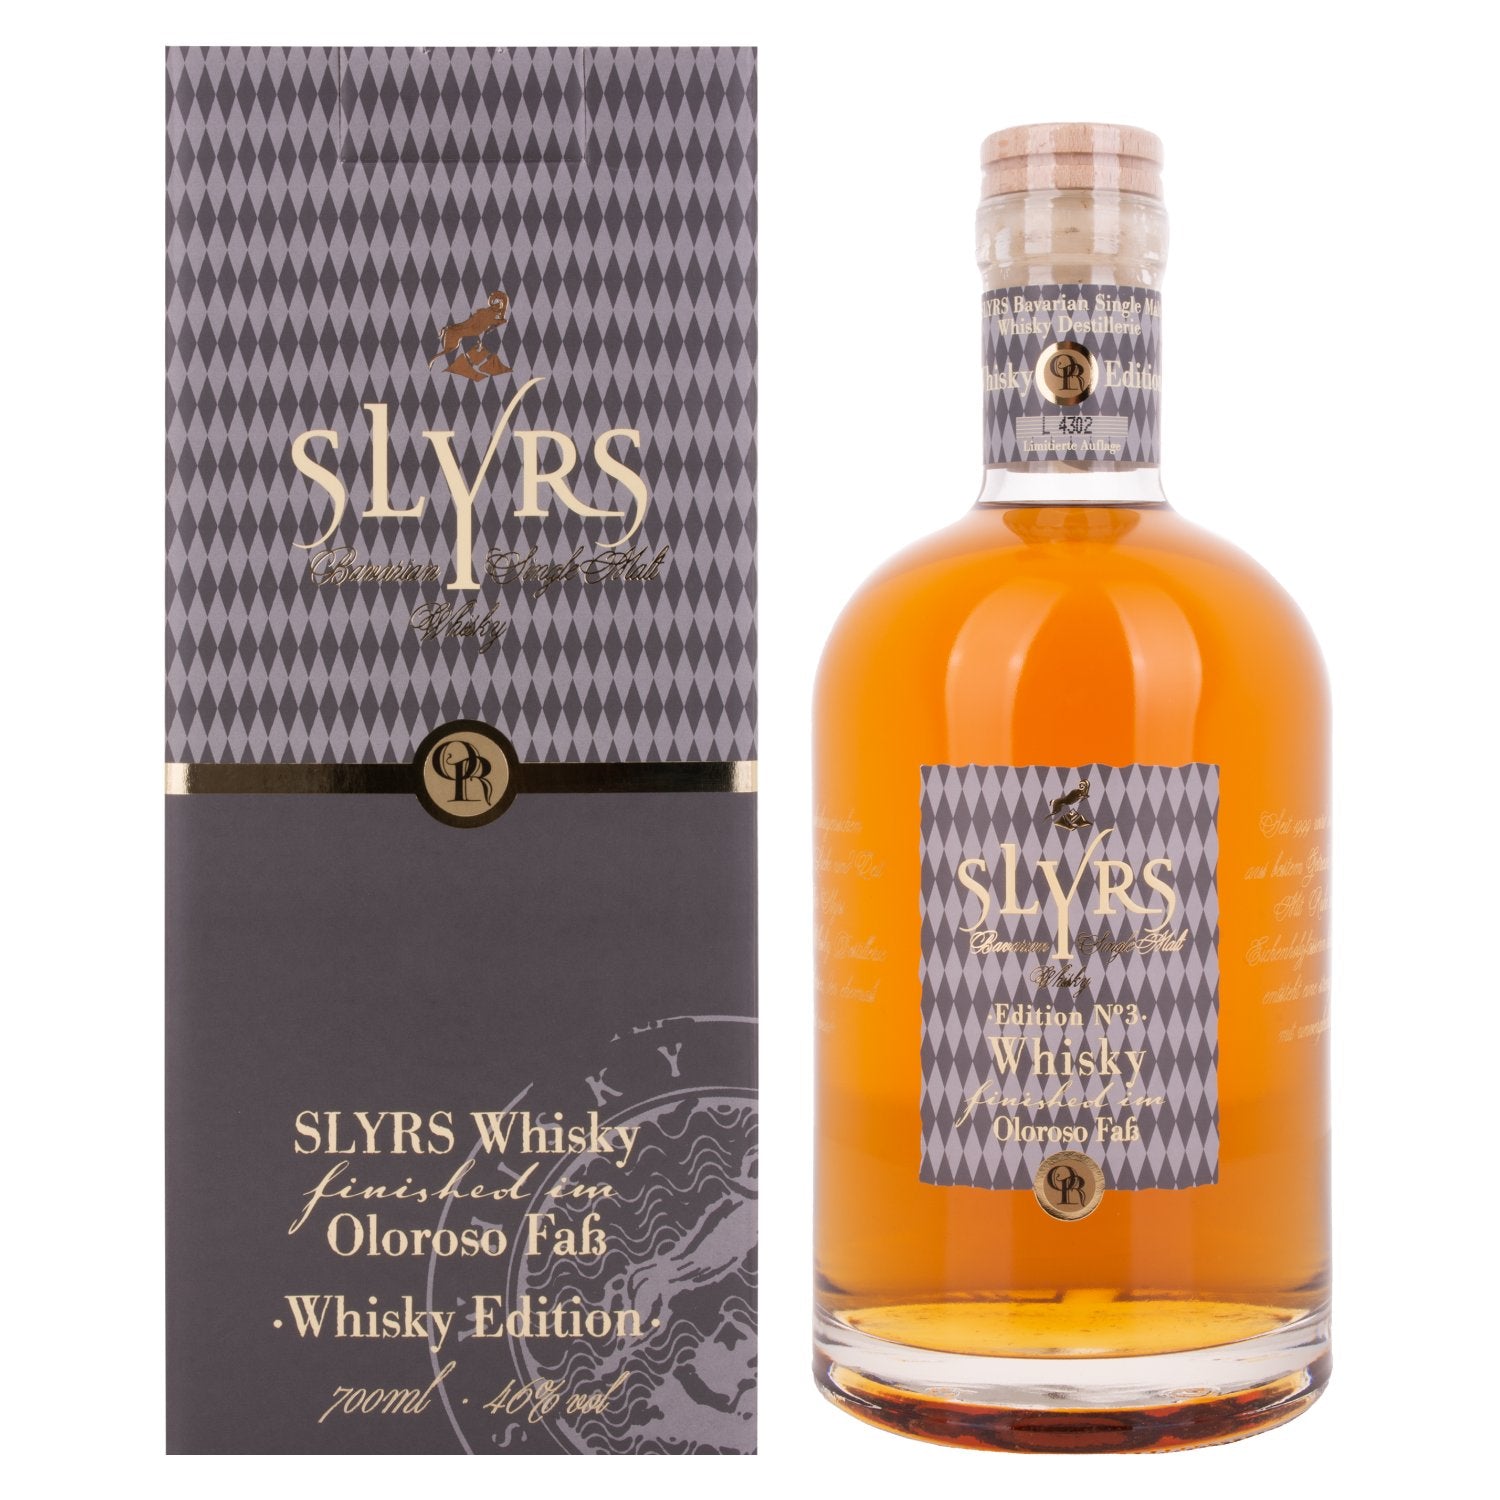 Slyrs Single Malt Whisky Oloroso Faß Finish Edition N° 3 46% Vol. 0,7l in Giftbox